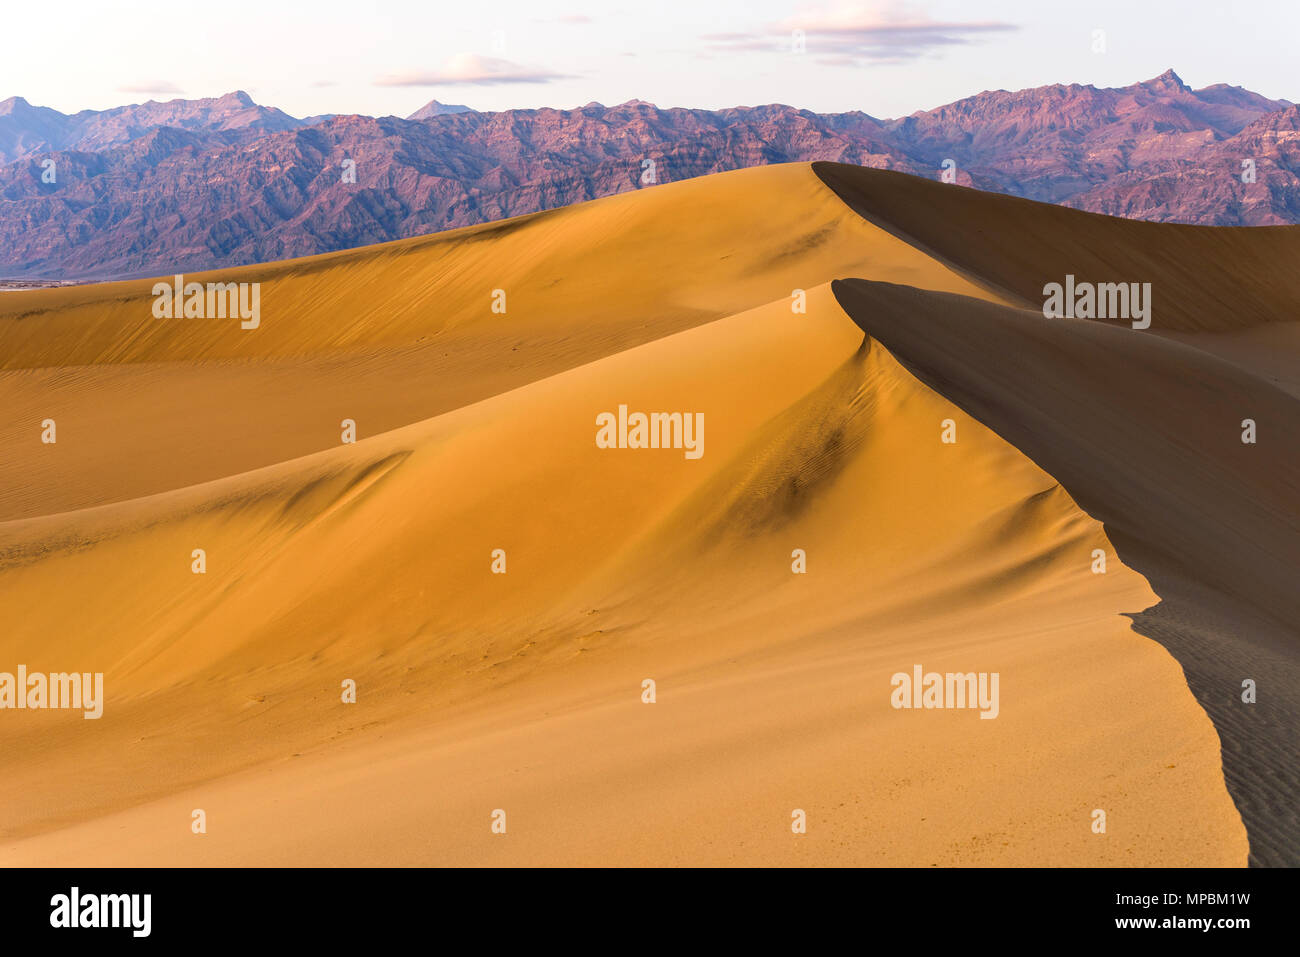 Les dunes de sable au coucher du soleil - une vue sur le coucher de soleil de printemps du matériel roulant Télévision Mesquite Sand Dunes debout à l'avant de l'Amargosa Range. Death Valley National Park, États-Unis Banque D'Images